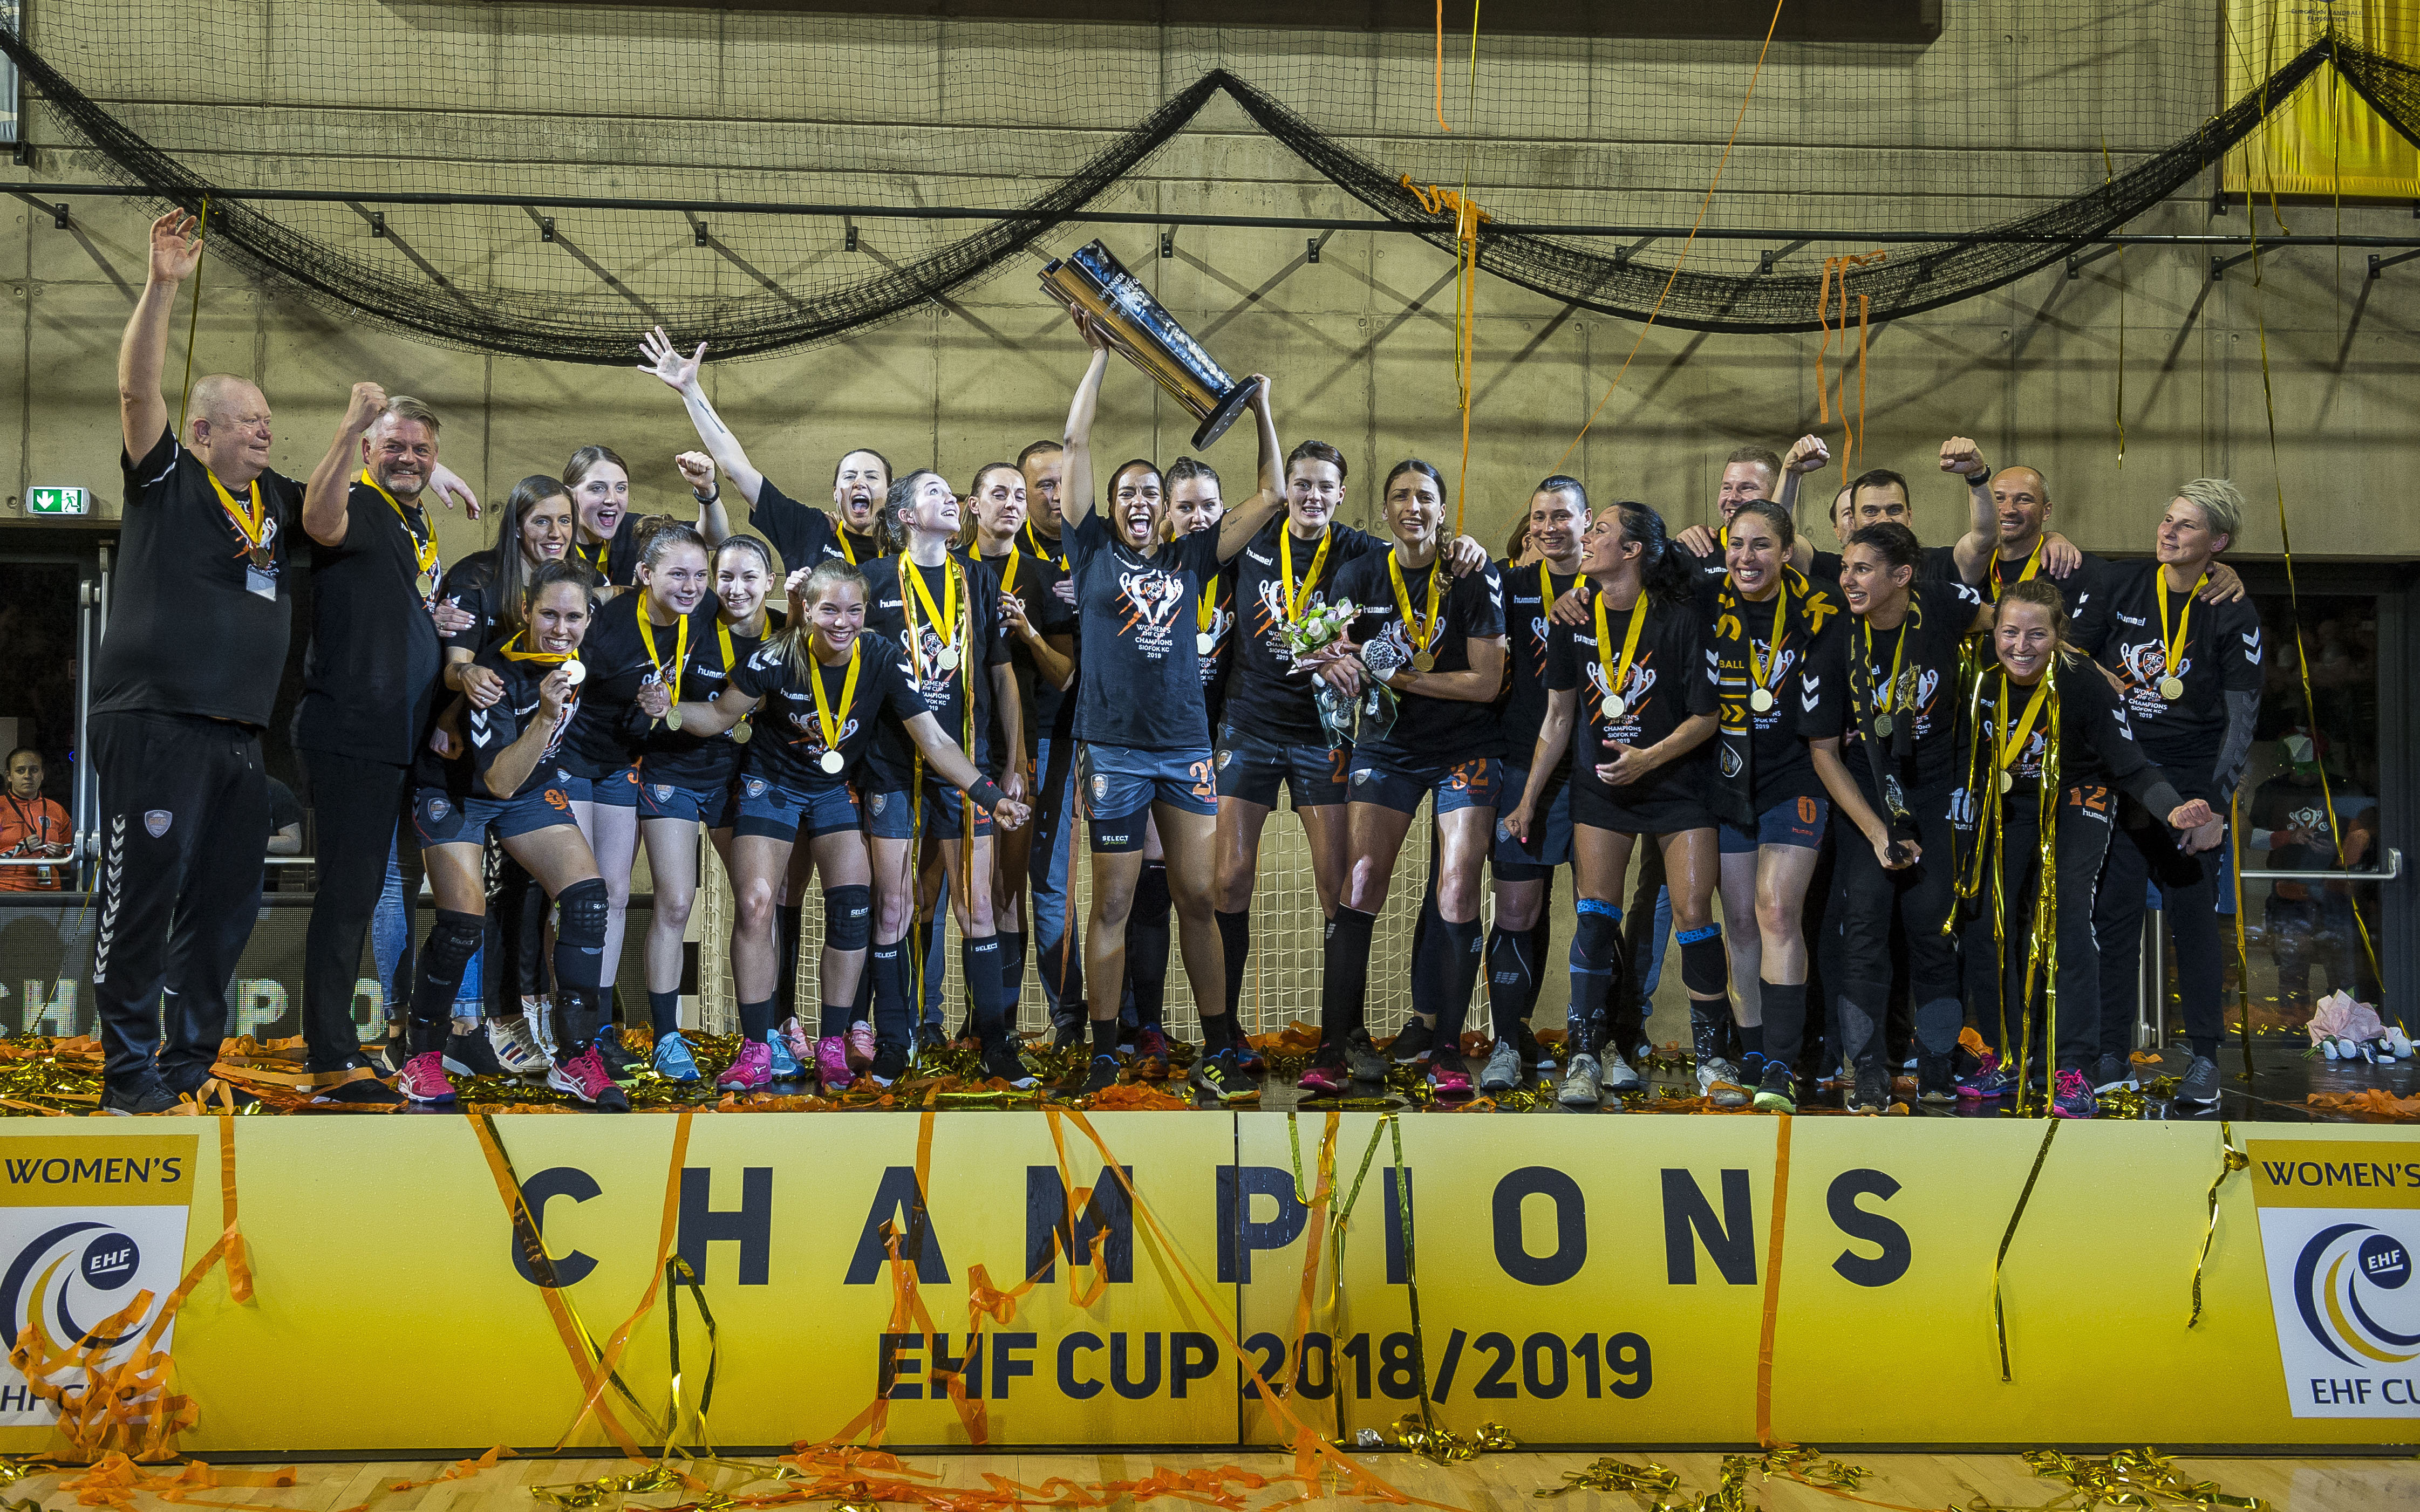 Siófok a câștigat EHF CUP feminin pentru primul titlu al clubului!